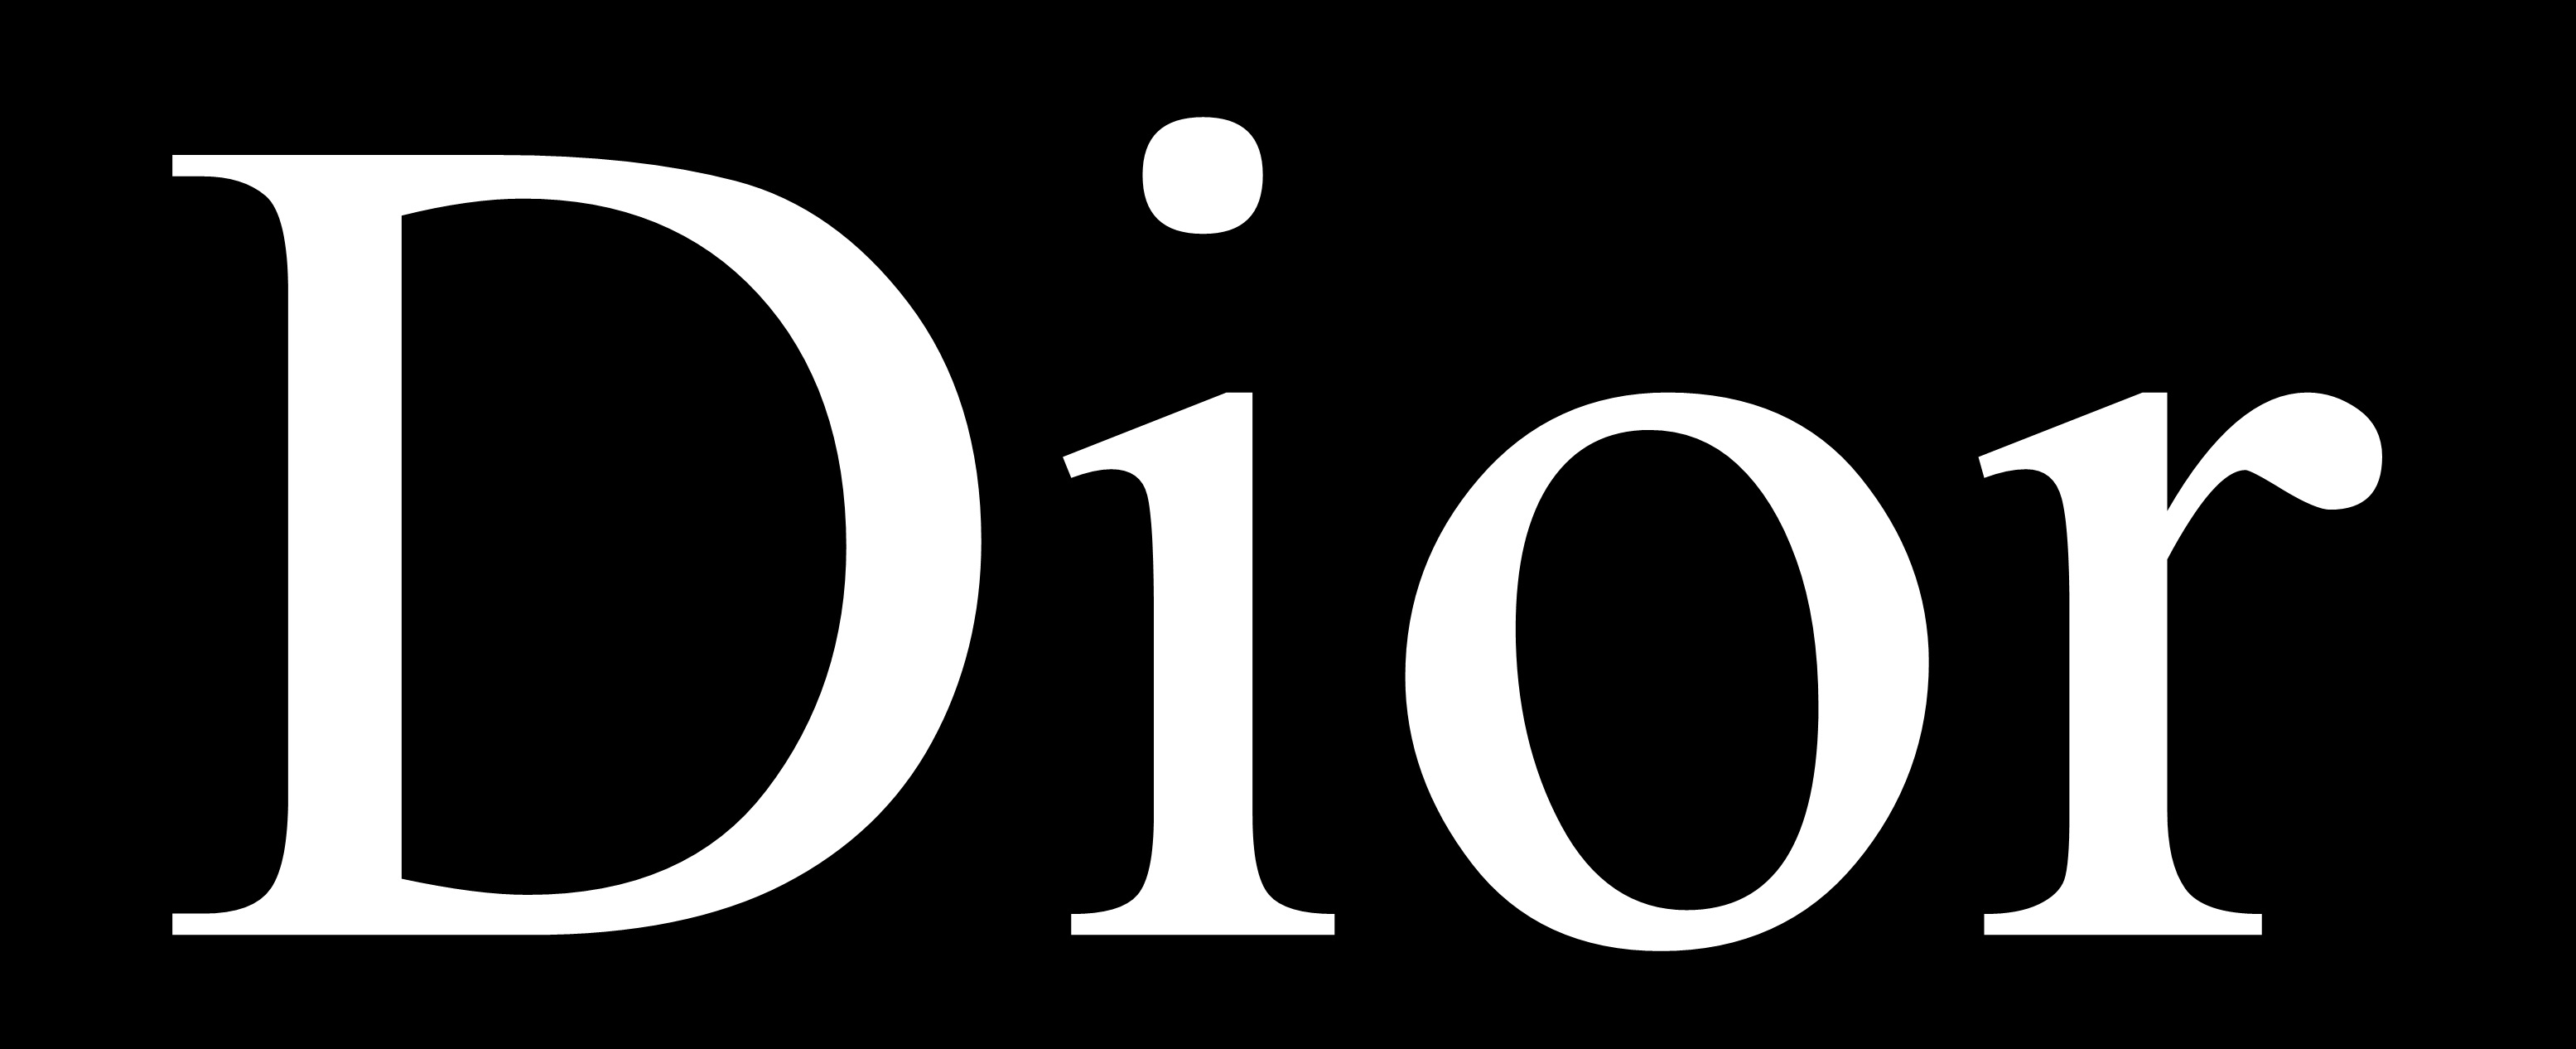 dior wallpaper, font, text, logo, brand, graphics